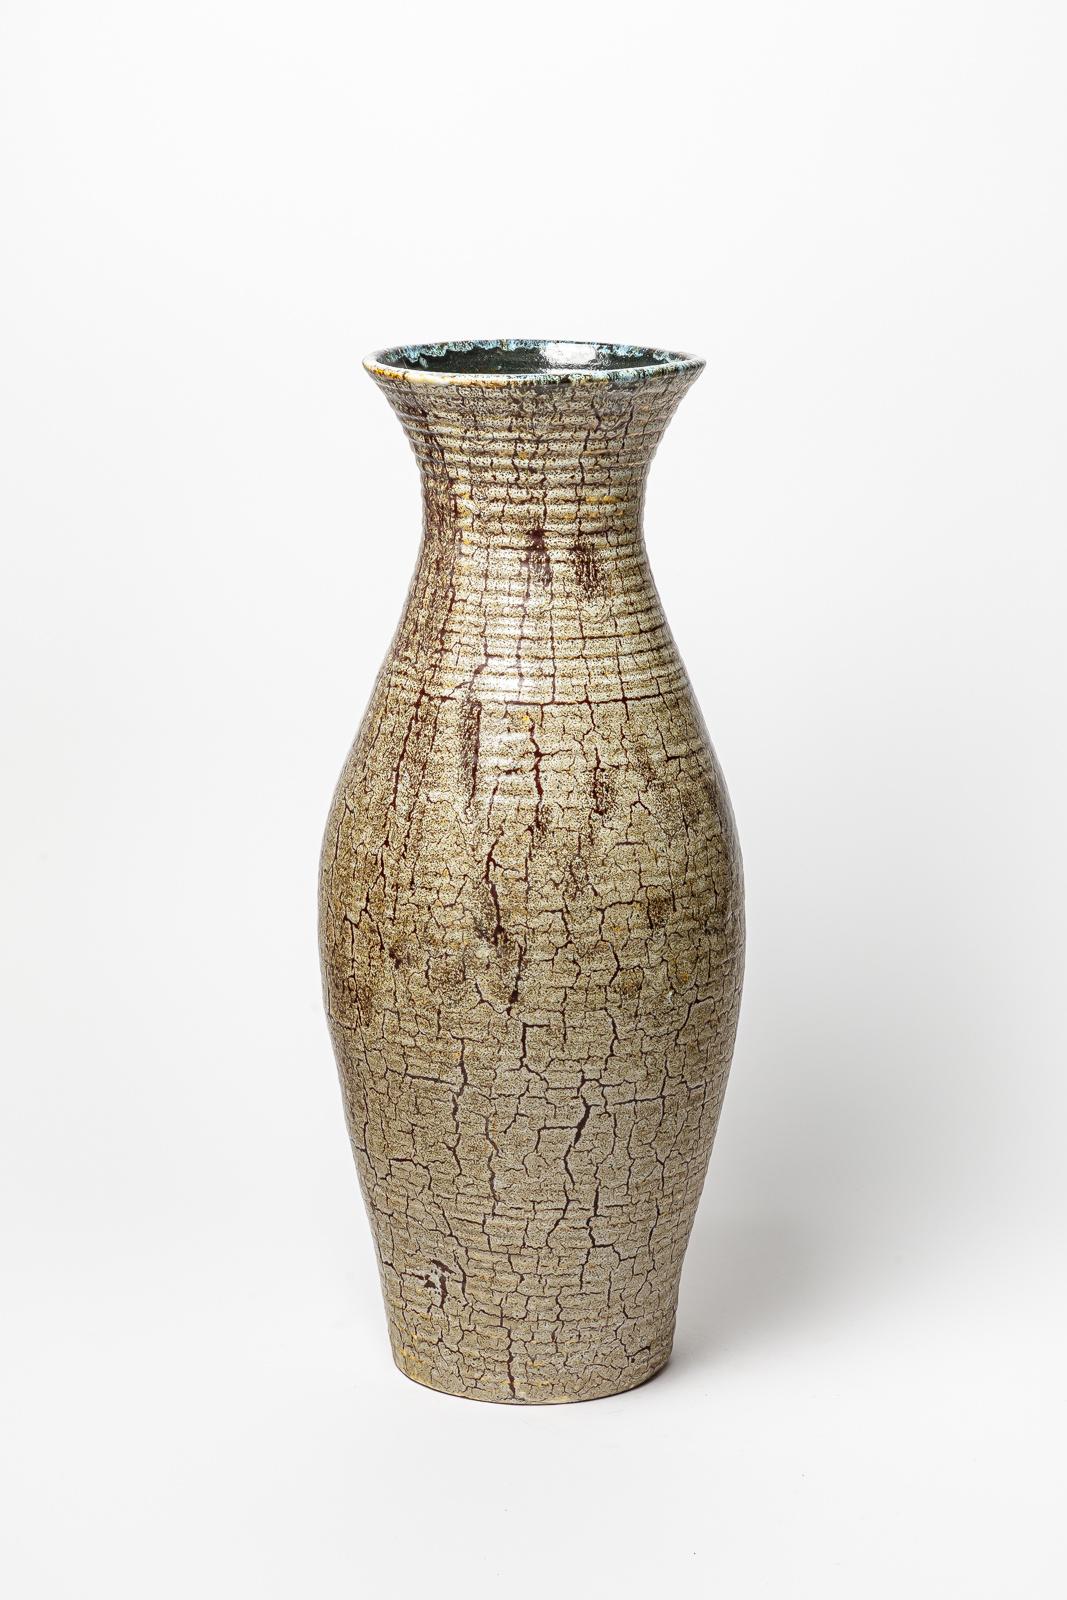 Vase en grès émaillé brun d'Accolay.
Signature de l'artiste sous la base. Circa 1960-1970. 
H : 21.6' x 8.3' pouces.
